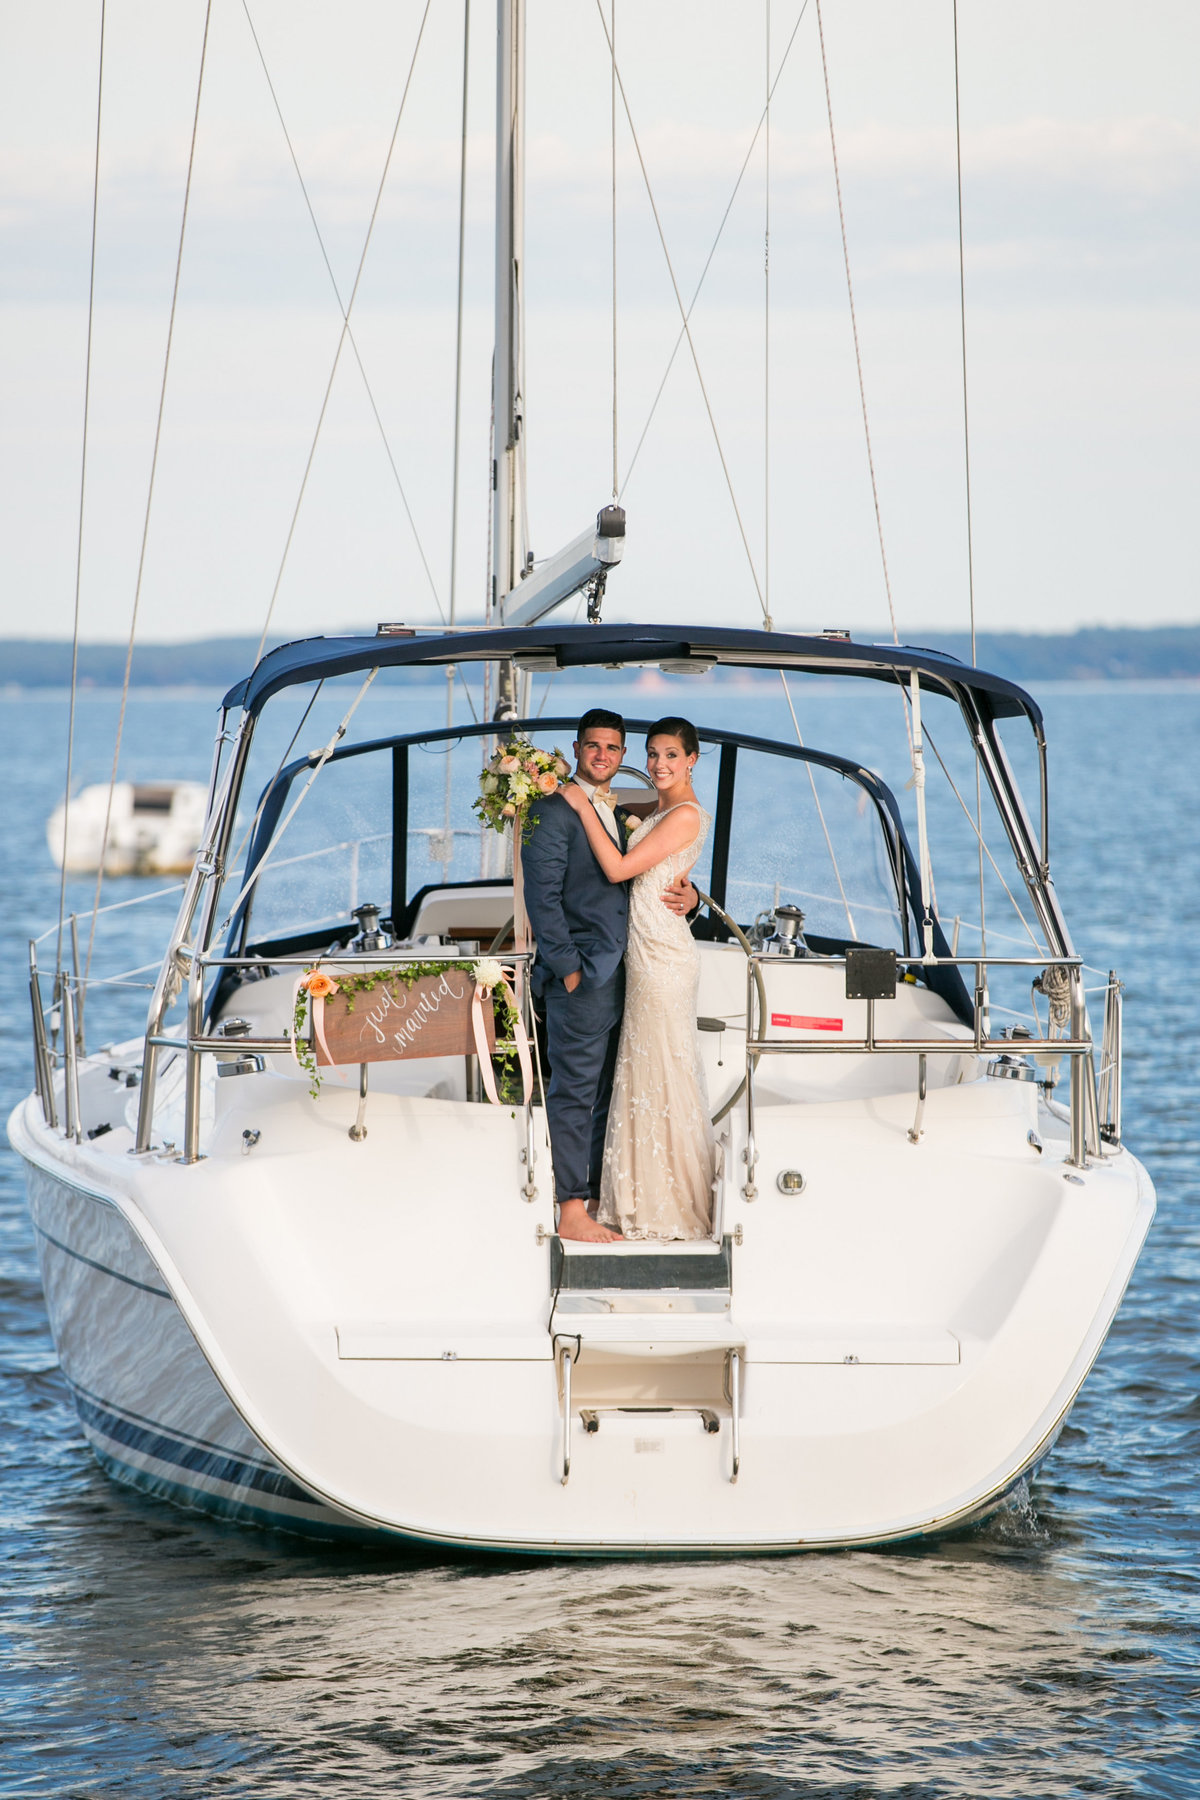 Wedding sendoff on a boat Maryland wedding